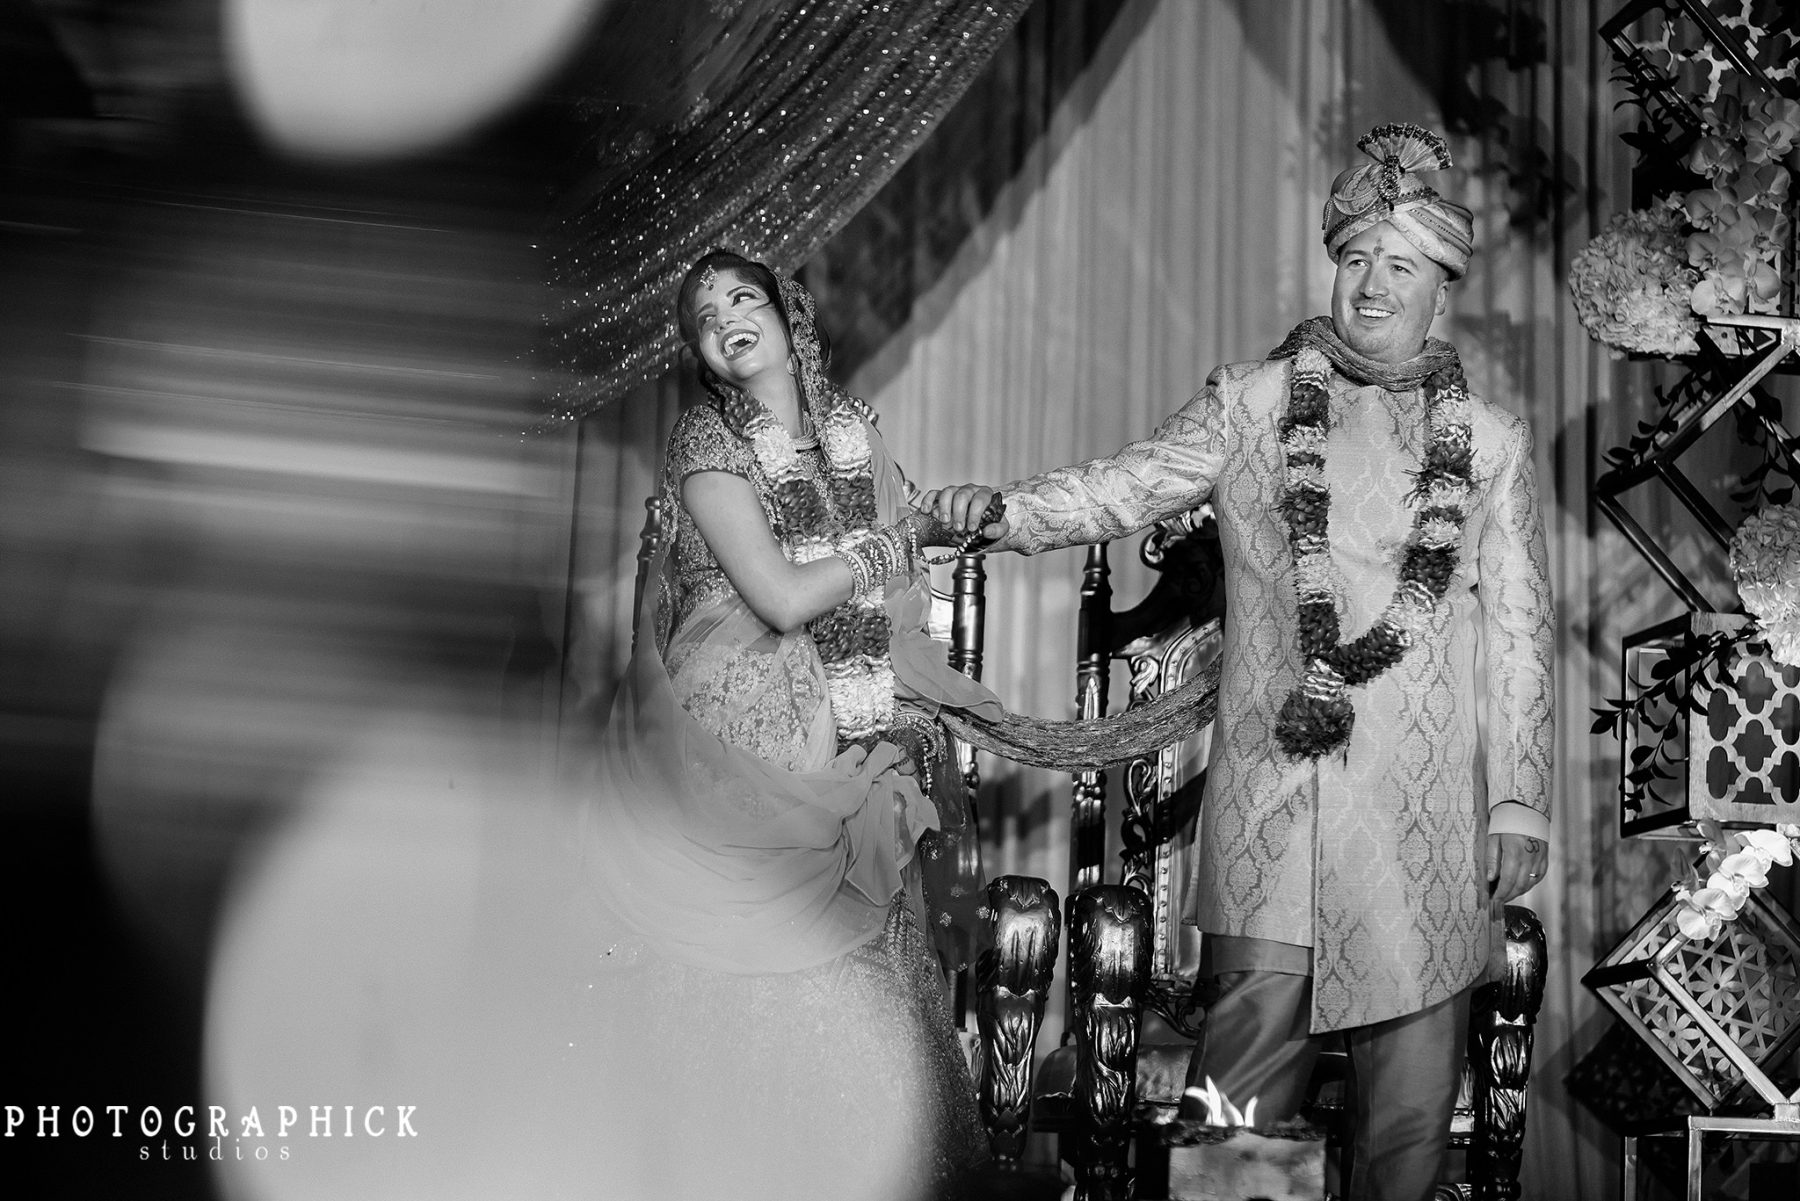 , Washington DC Luxury Indian Wedding of Rhea and Peter